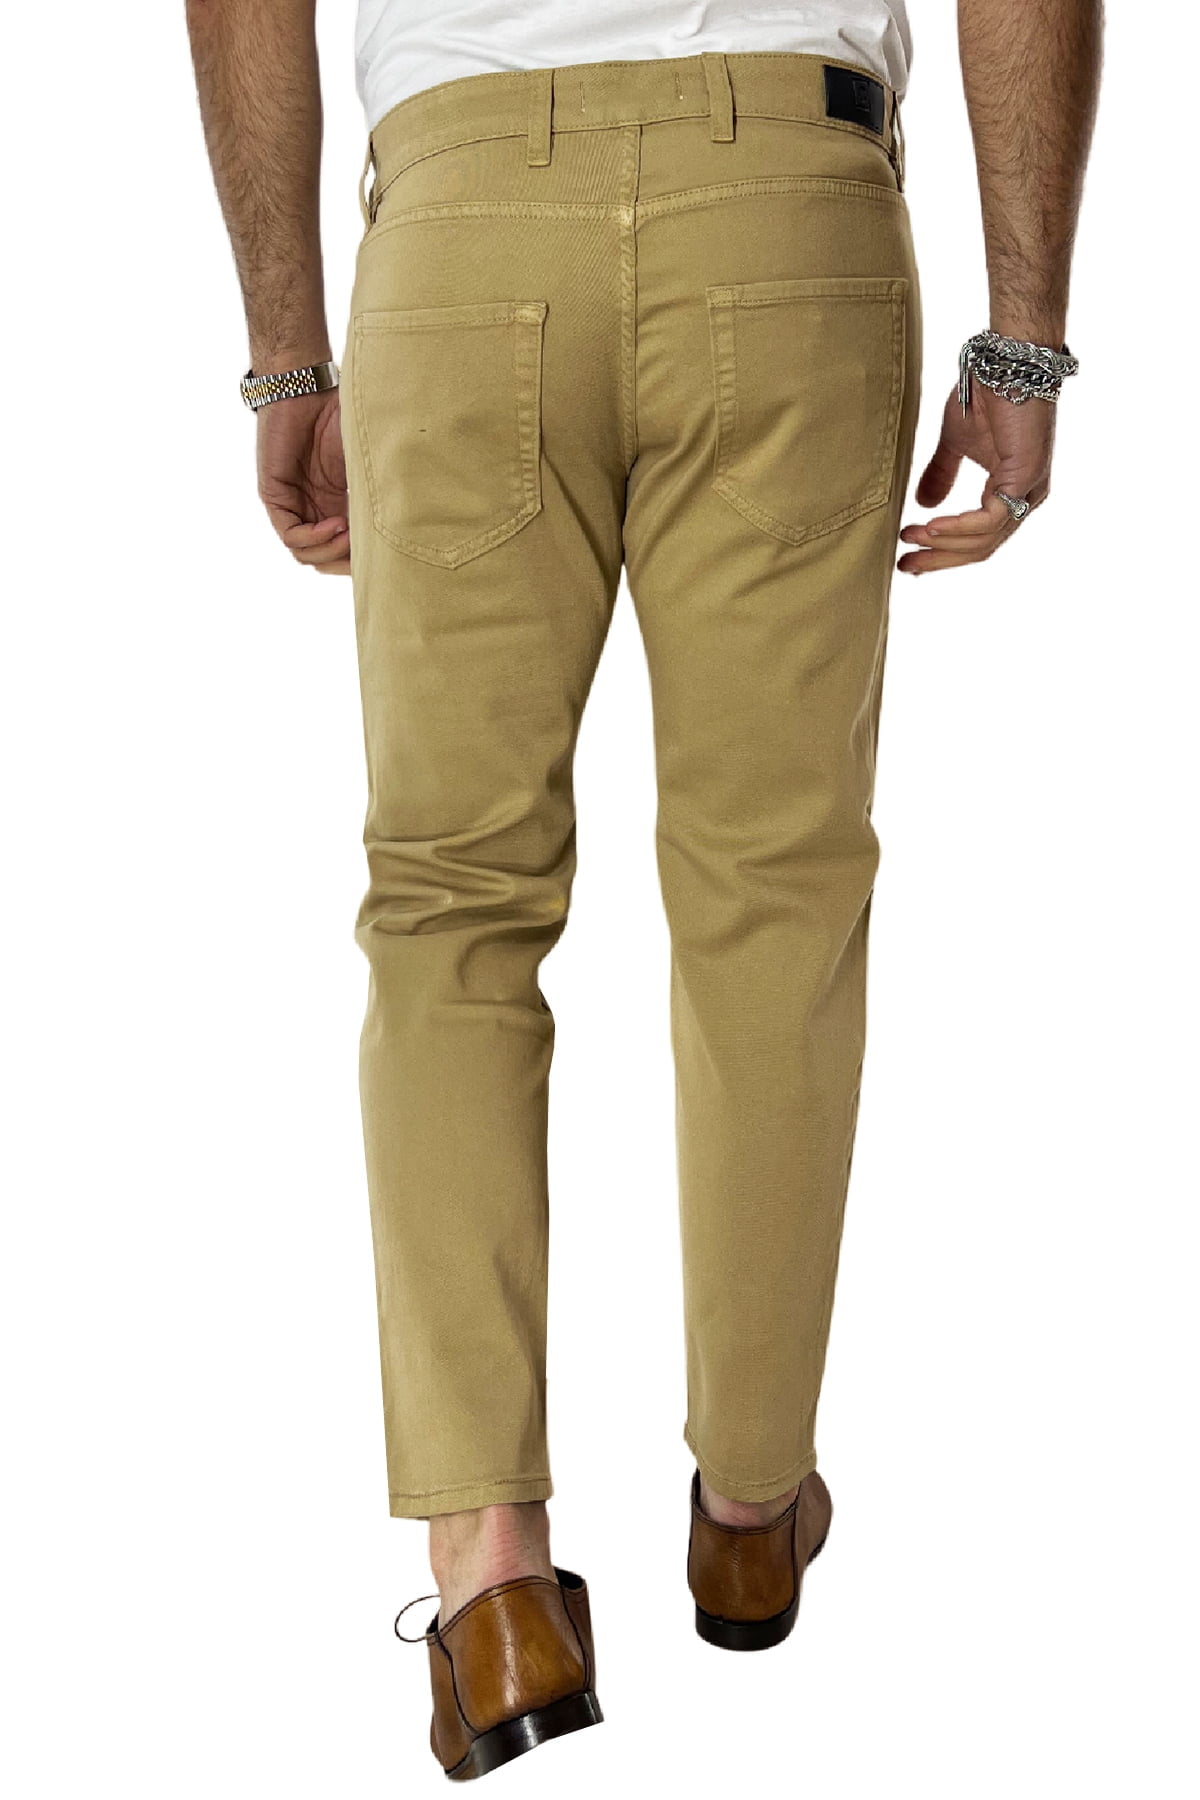 Jeans uomo cammello tinta unita modello 5 tasche slim fit estivo made in italy